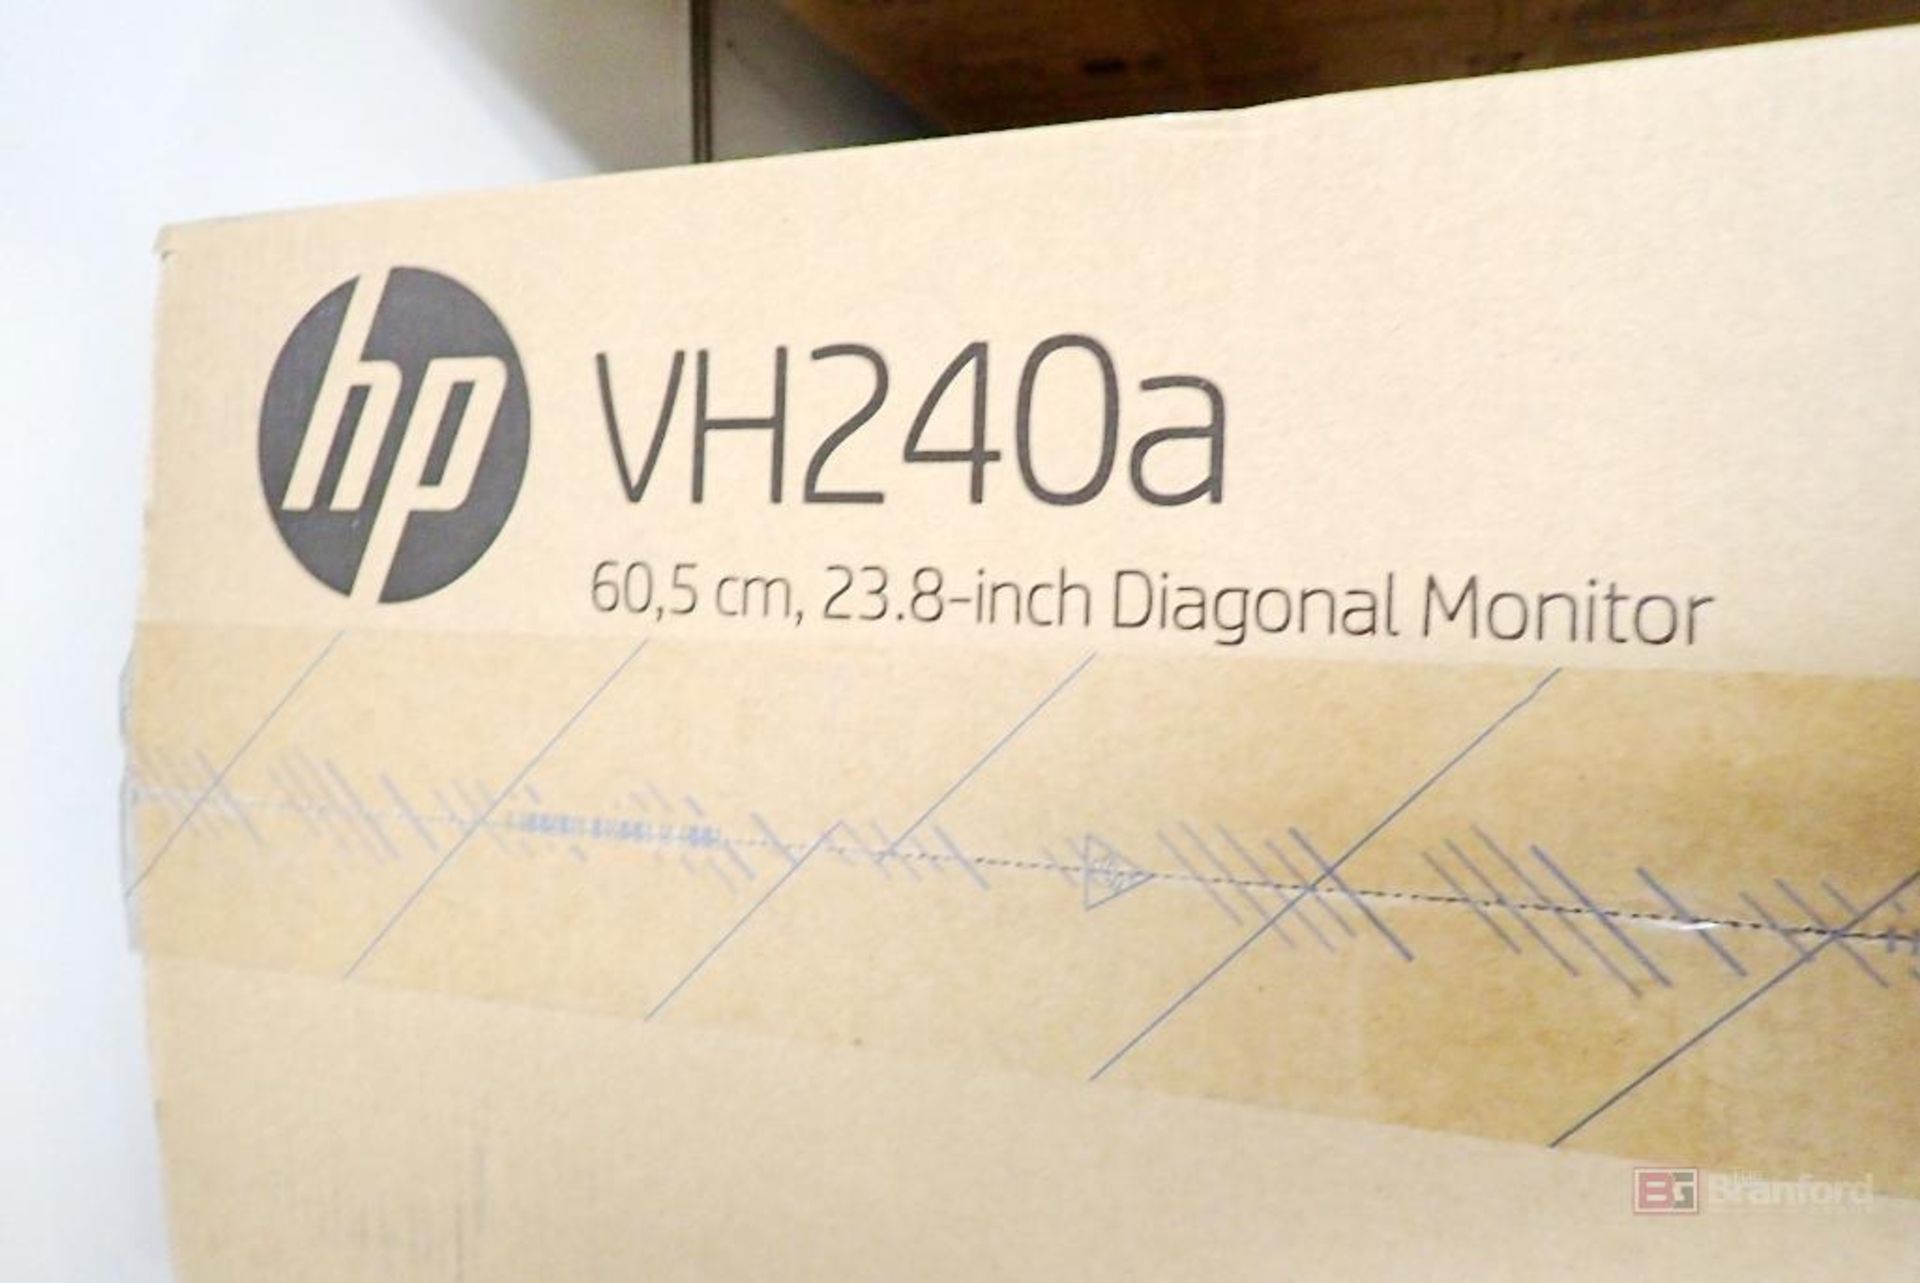 HP VH240A Diagonal Monitor - Image 2 of 2